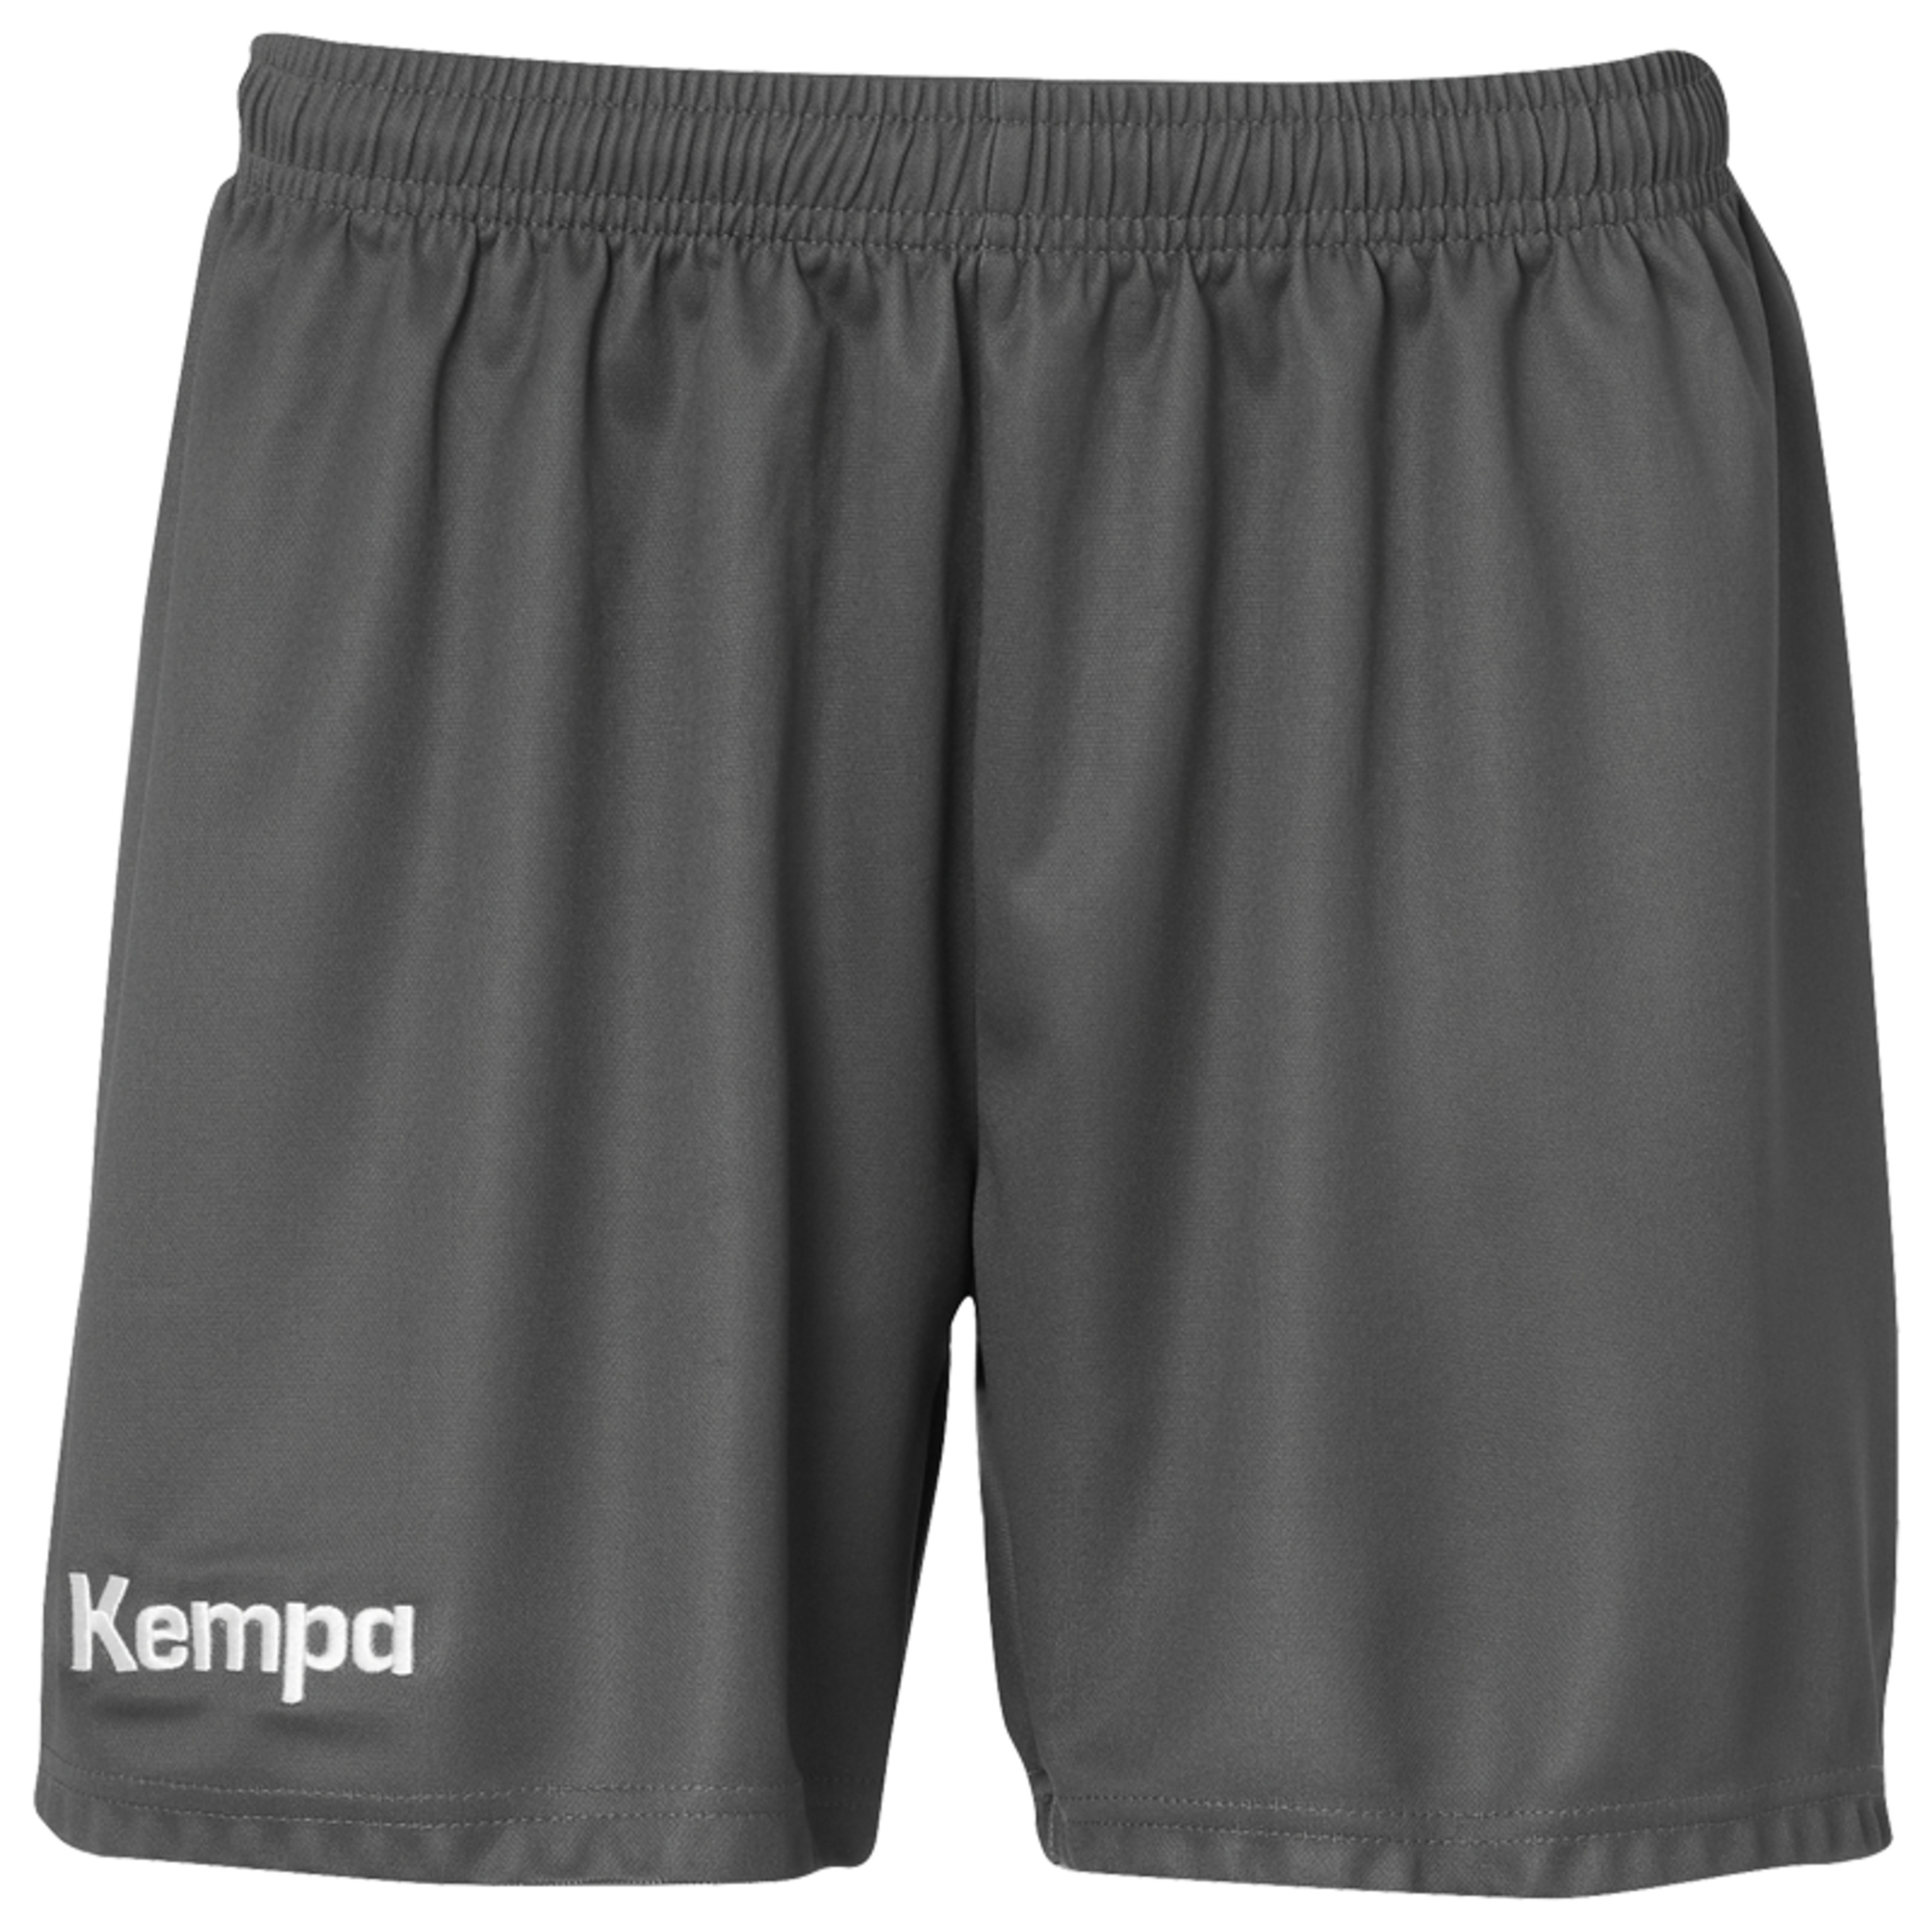 Classic Shorts Women Azul Kempa - azul - Classic Shorts Women Azul Kempa  MKP